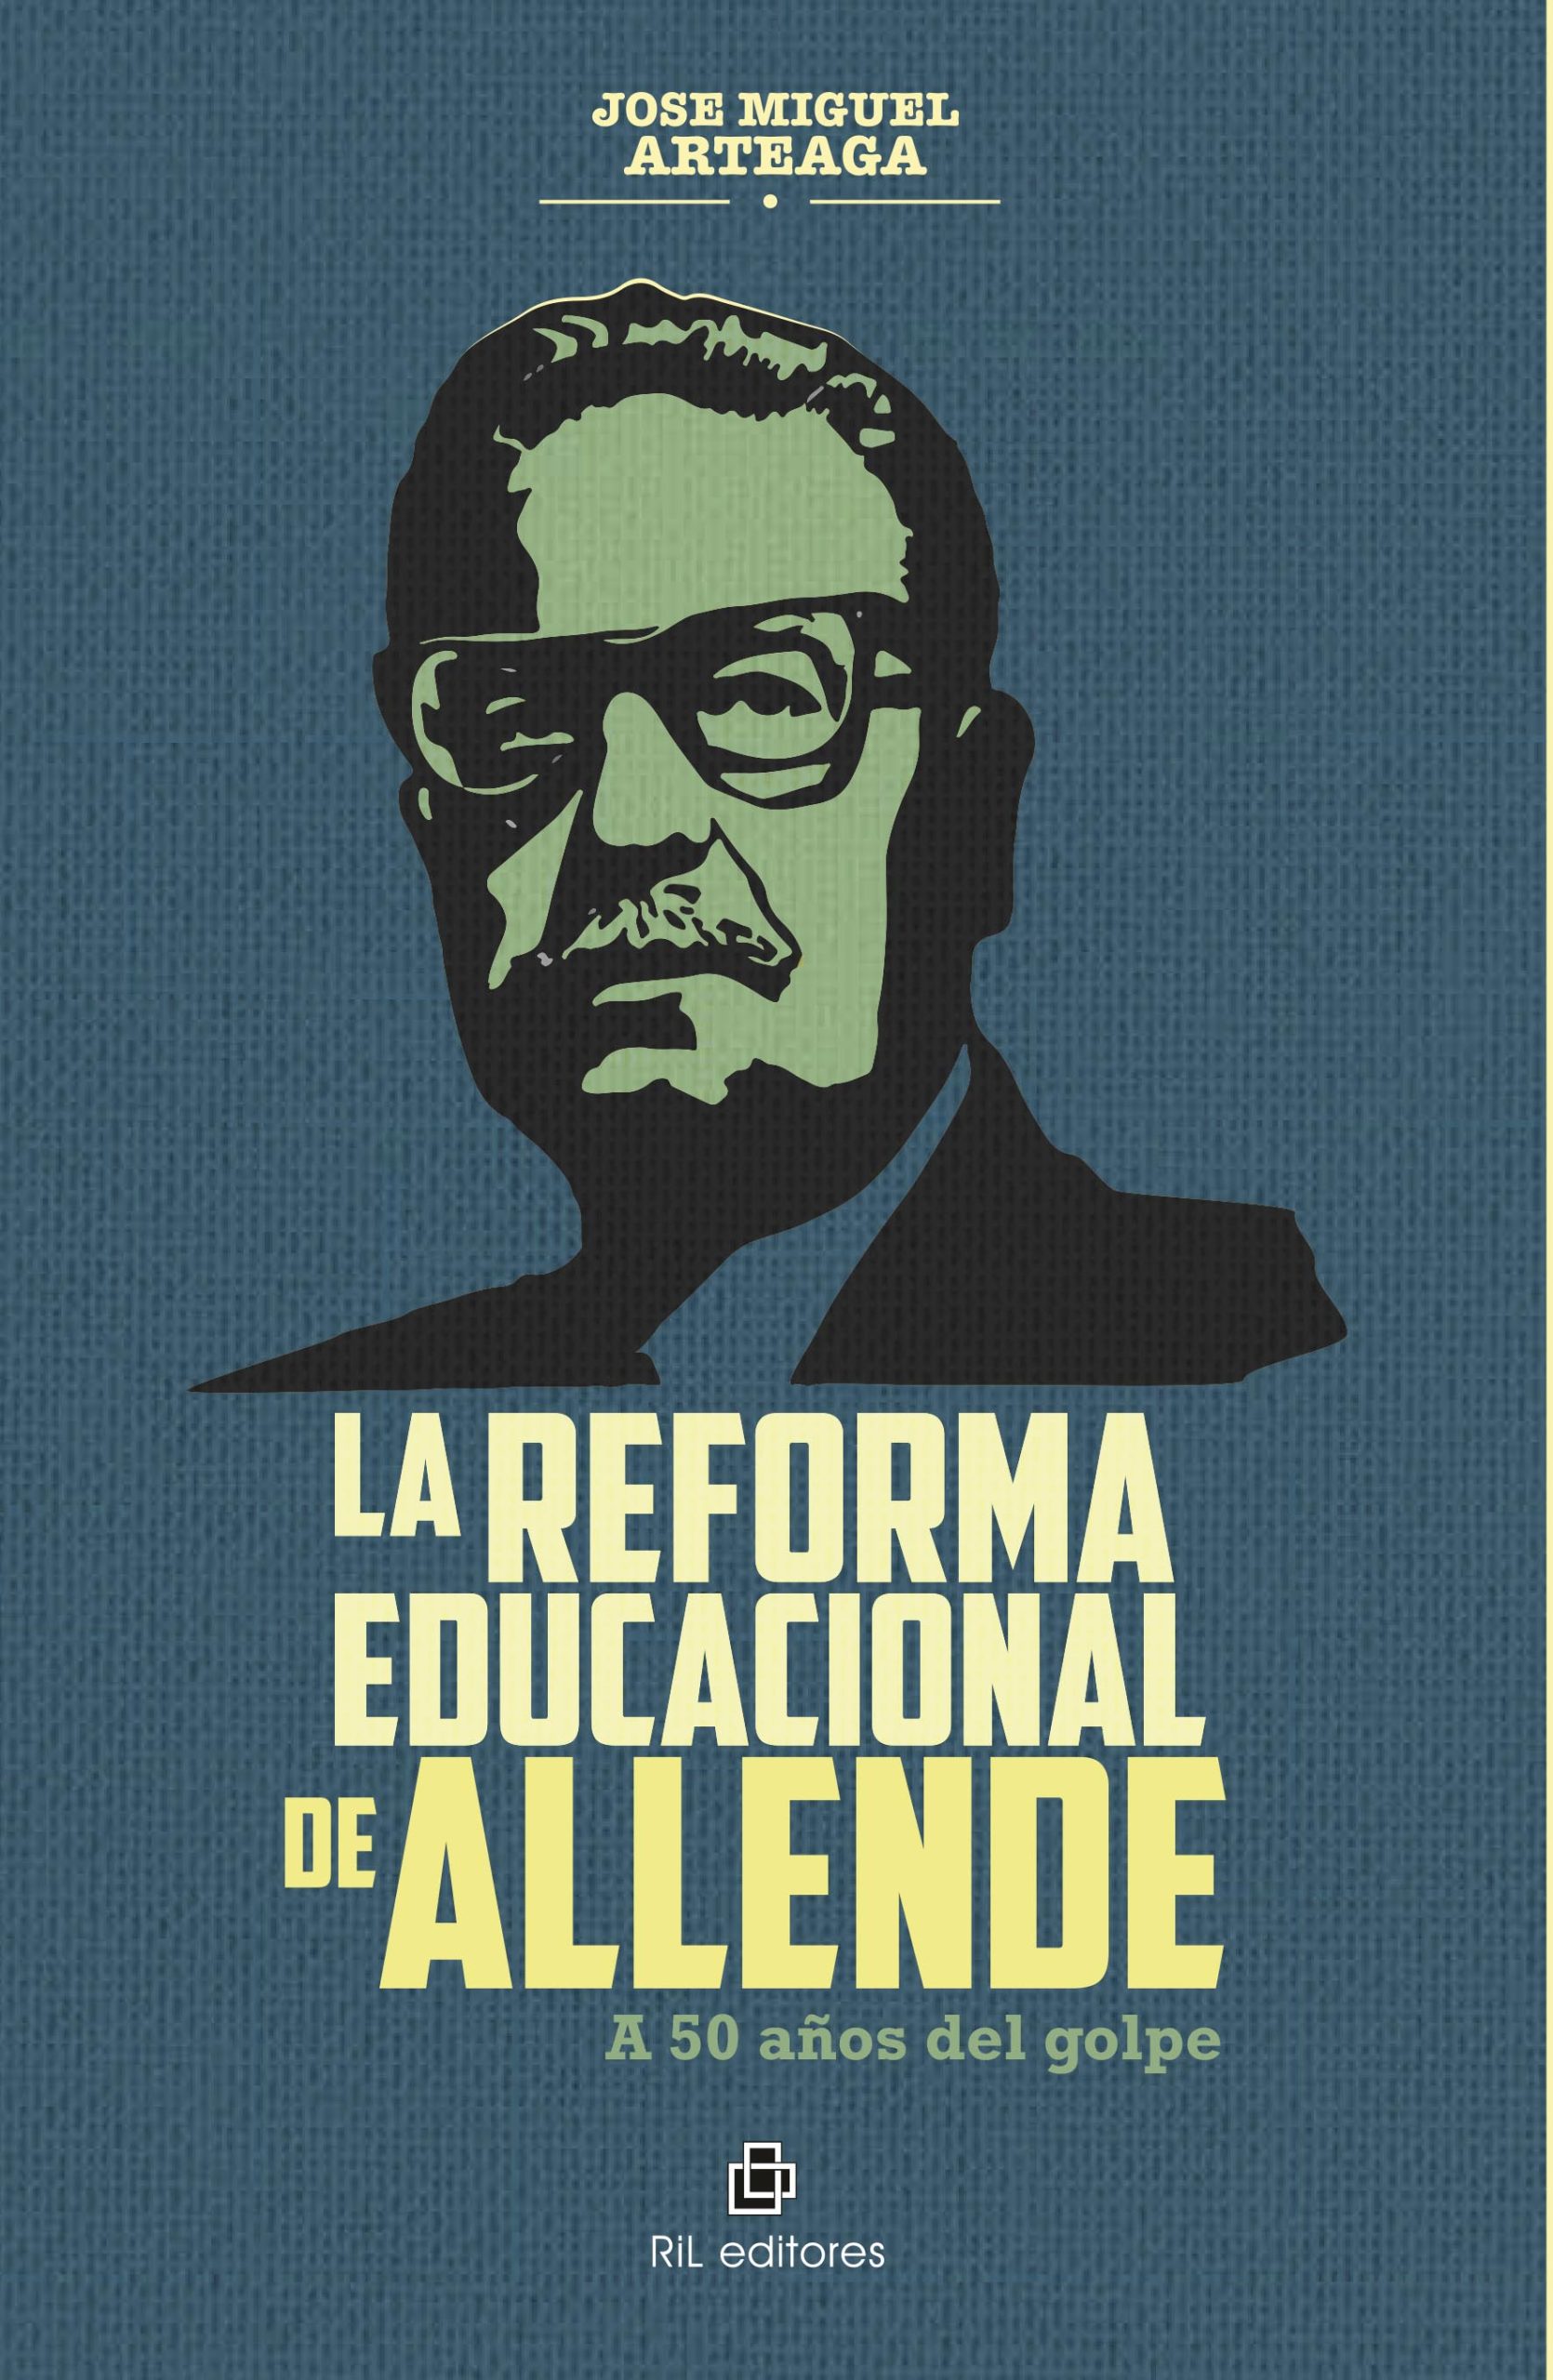 La Reforma Educacional de Allende. A 50 años del golpe 1